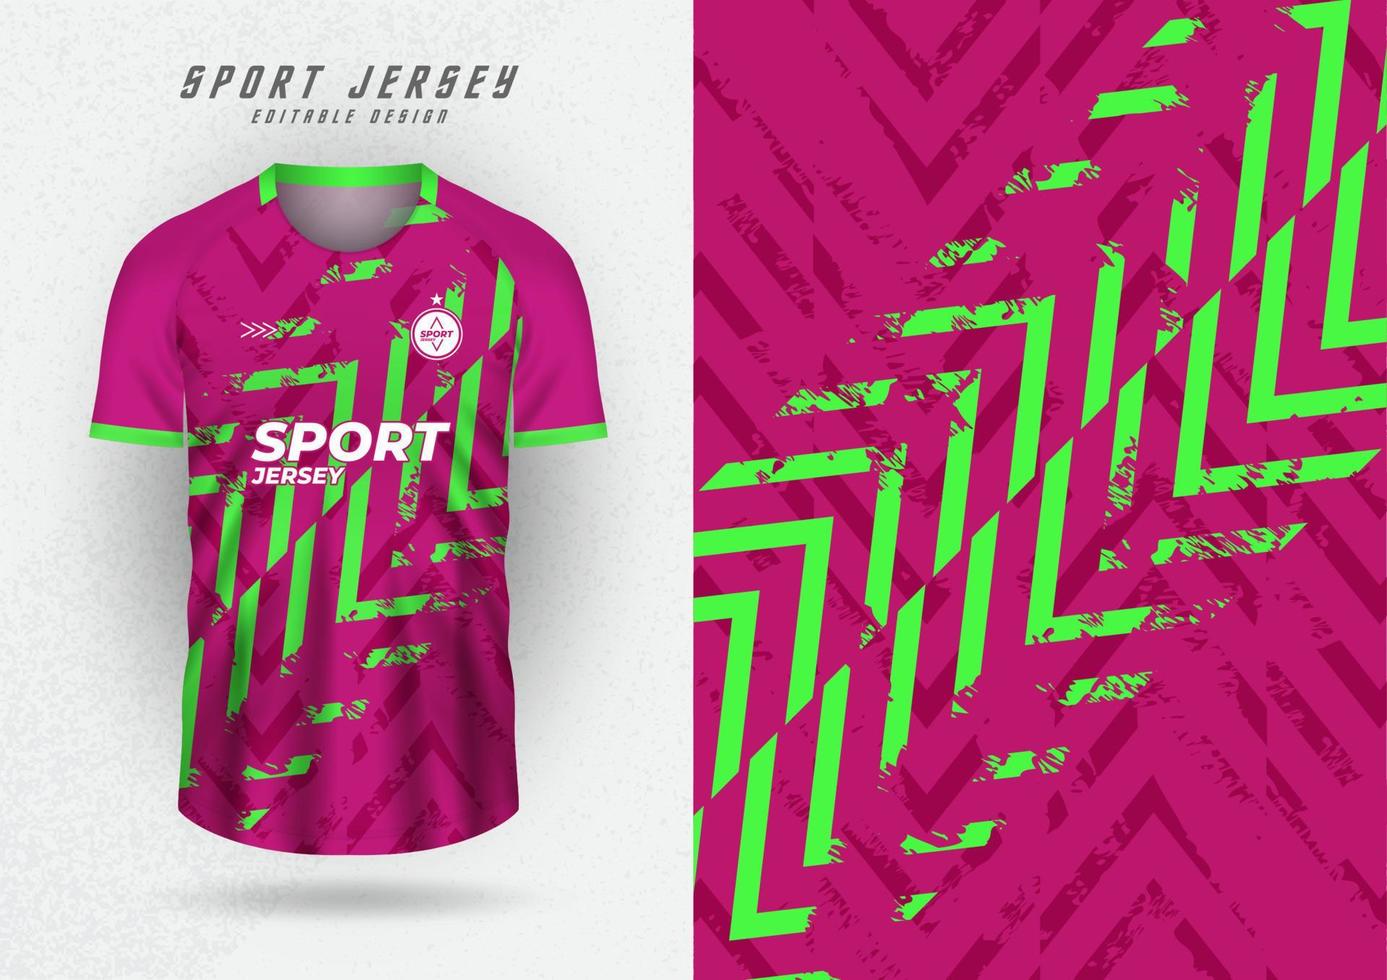 maquete de fundo para camisas de equipes esportivas, camisas e camisas de corrida. fundo rosa com listras verdes reflexivas. vetor